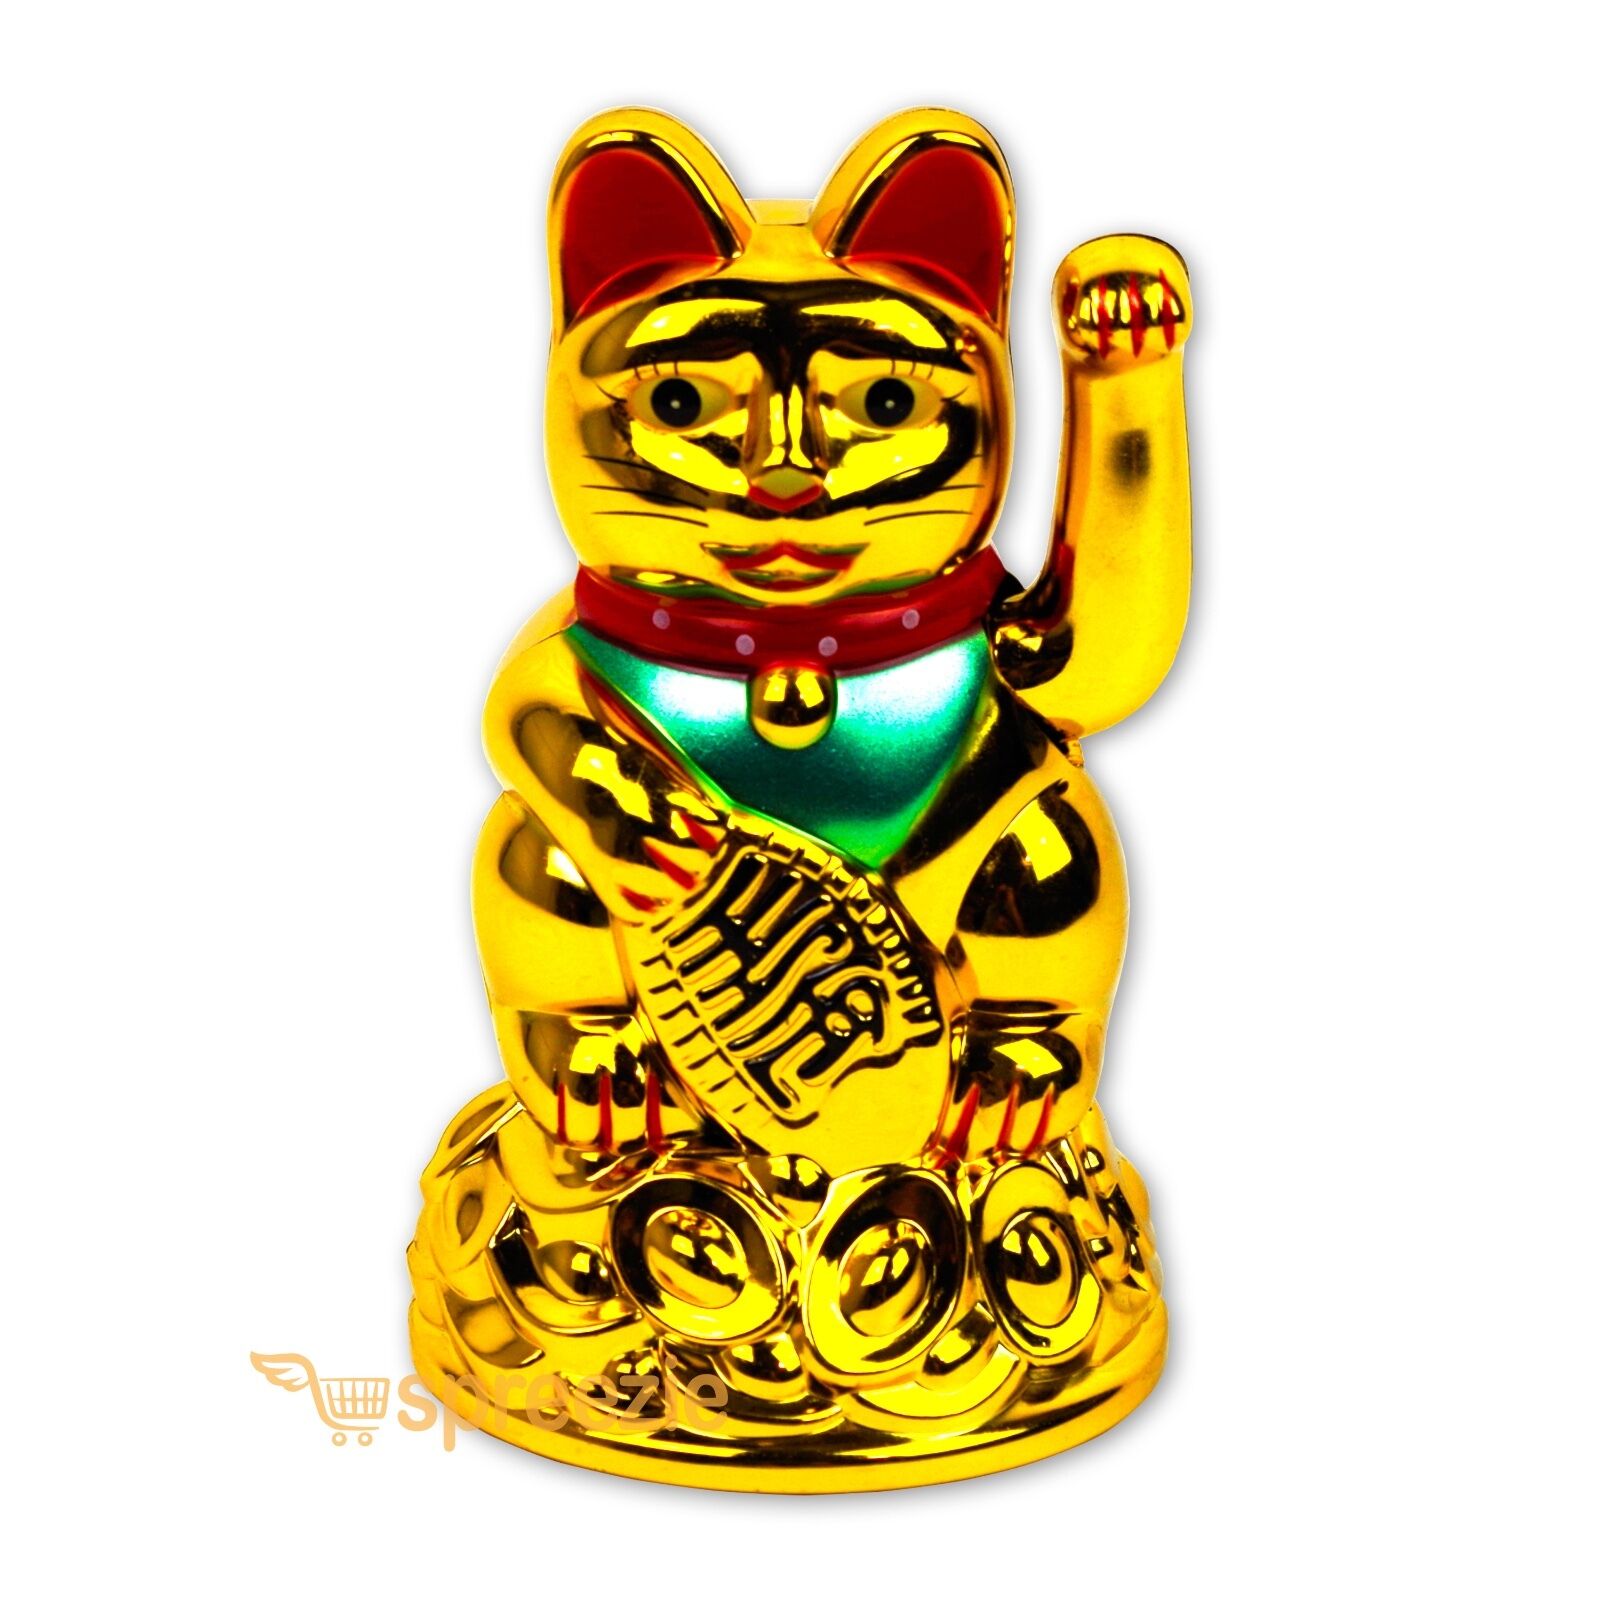 Maneki Neko Beckoning Cat Gold Wealth Lucky Charm Waving Kitty Feng Shui 4" Tall